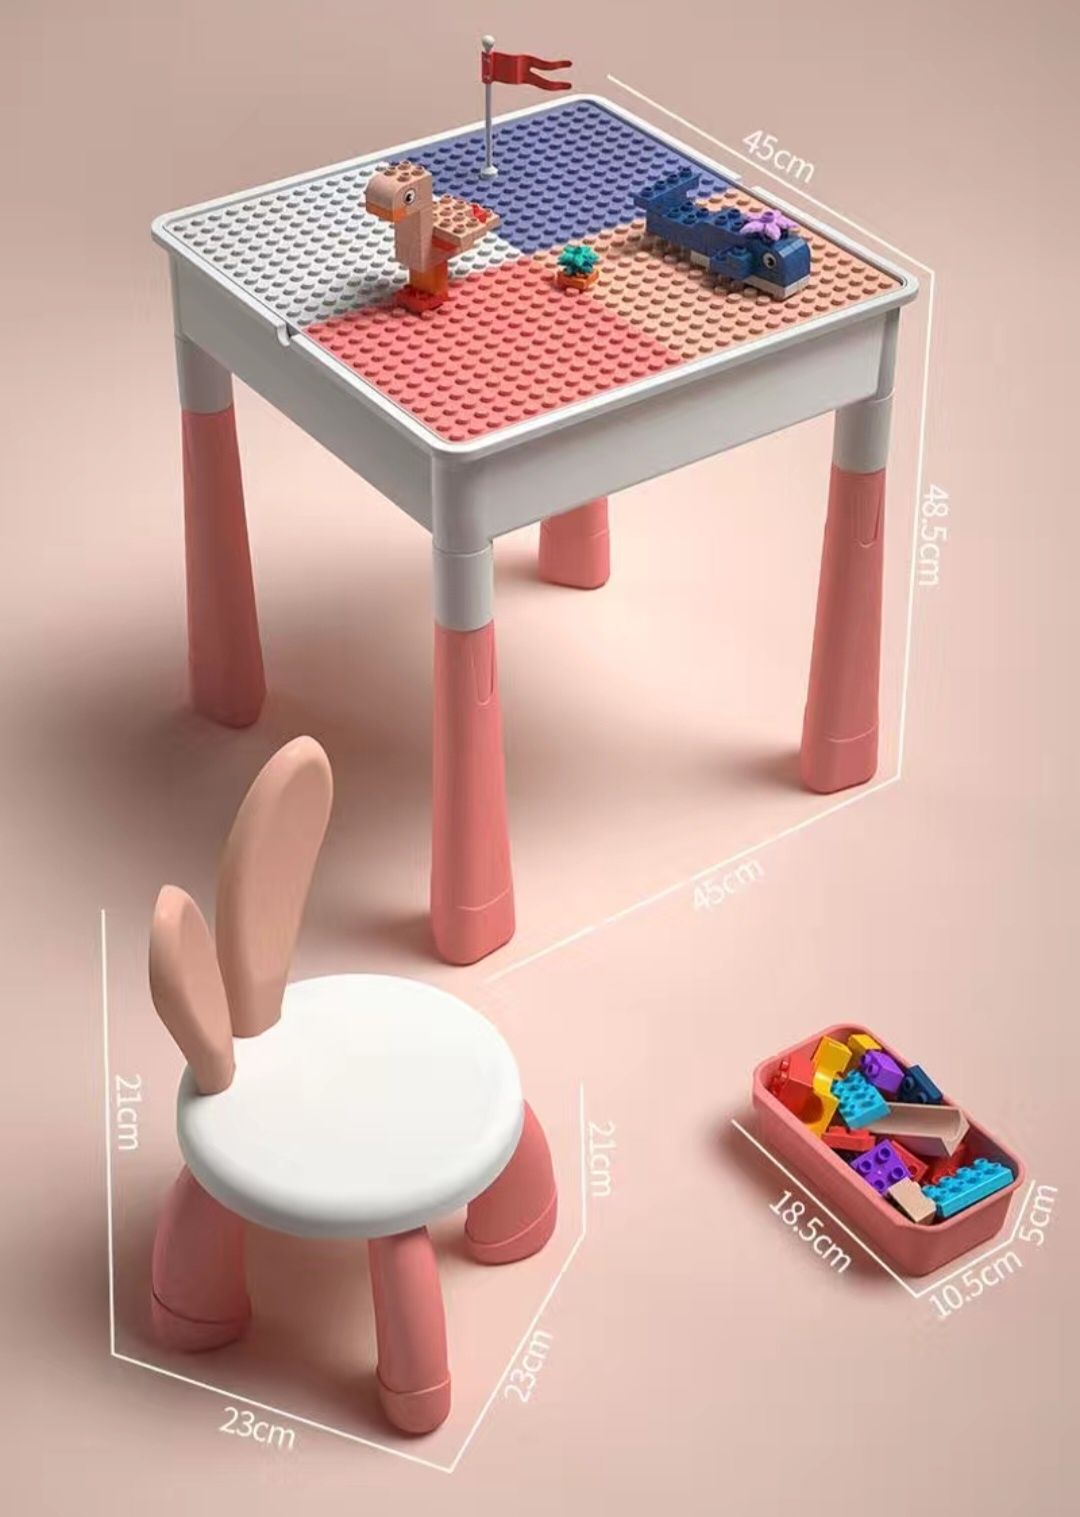 Лего стол, стул с набором конструктора 443 детали